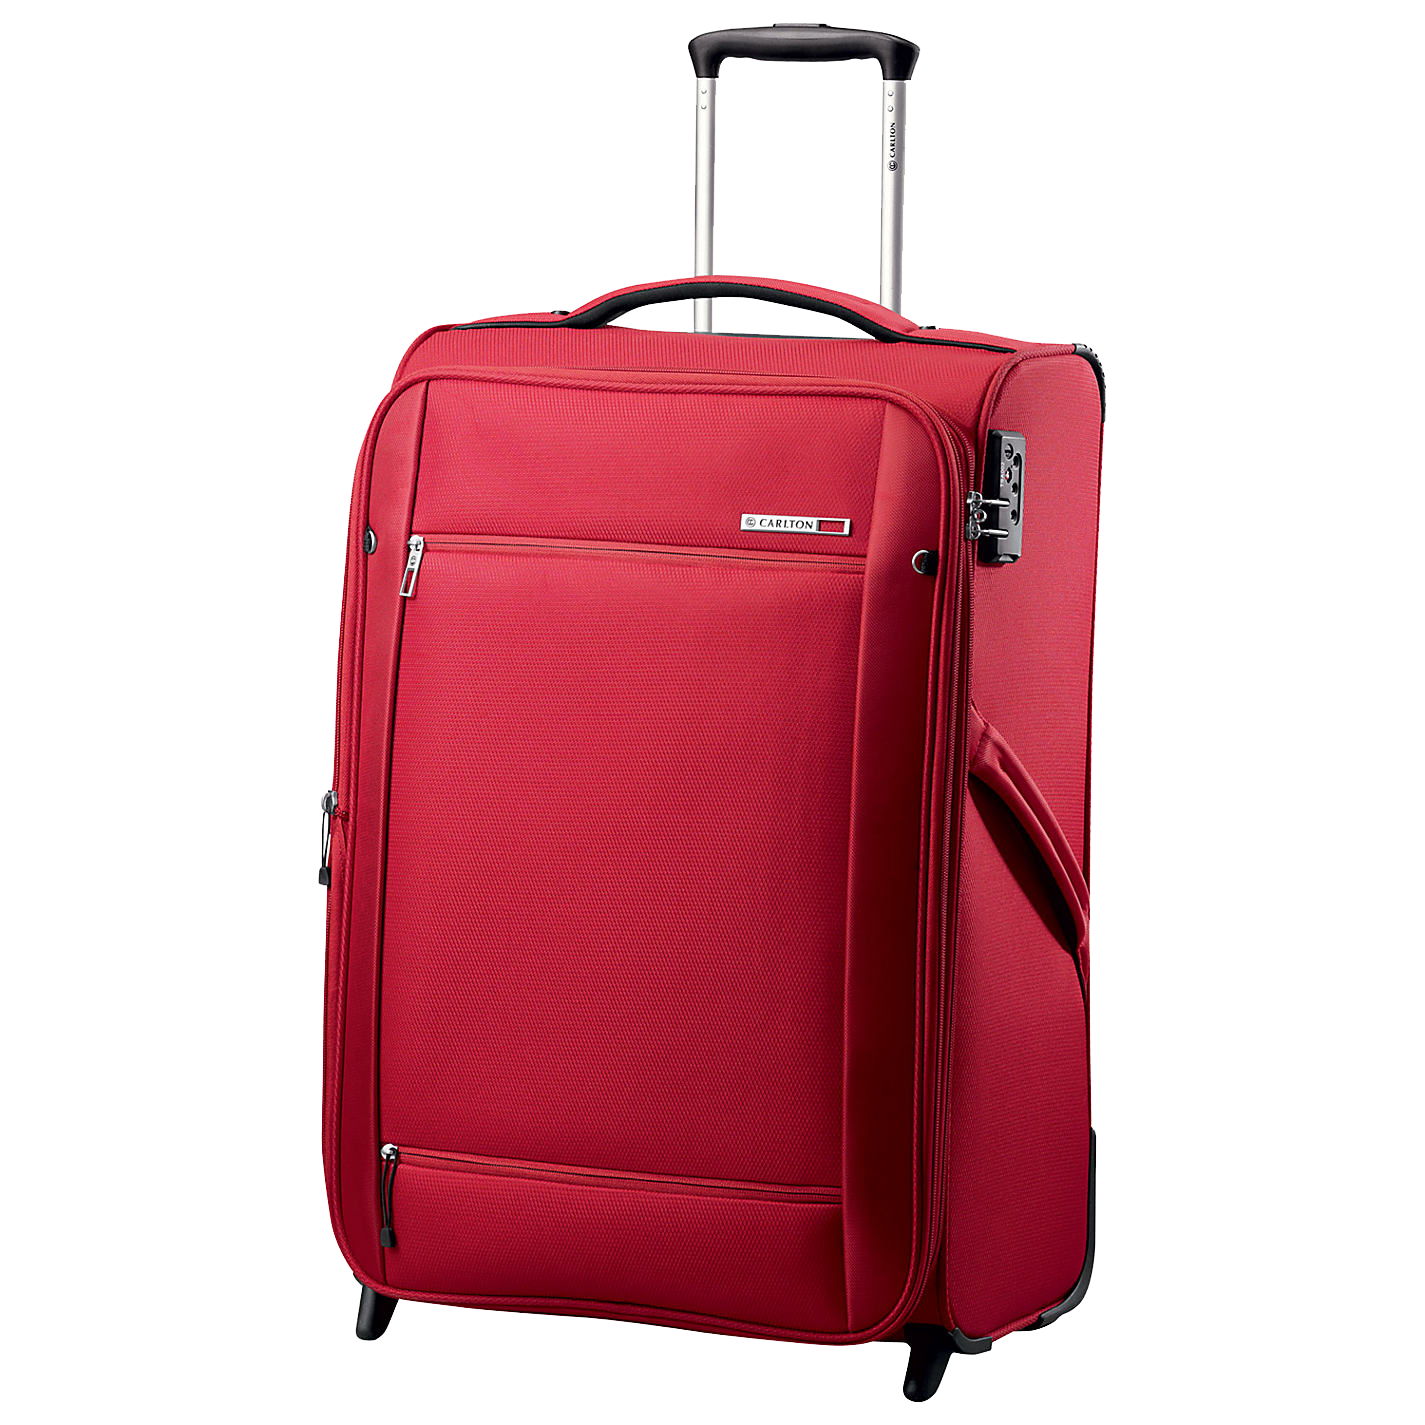 Holster Bag Rucksack Suitcase PNG